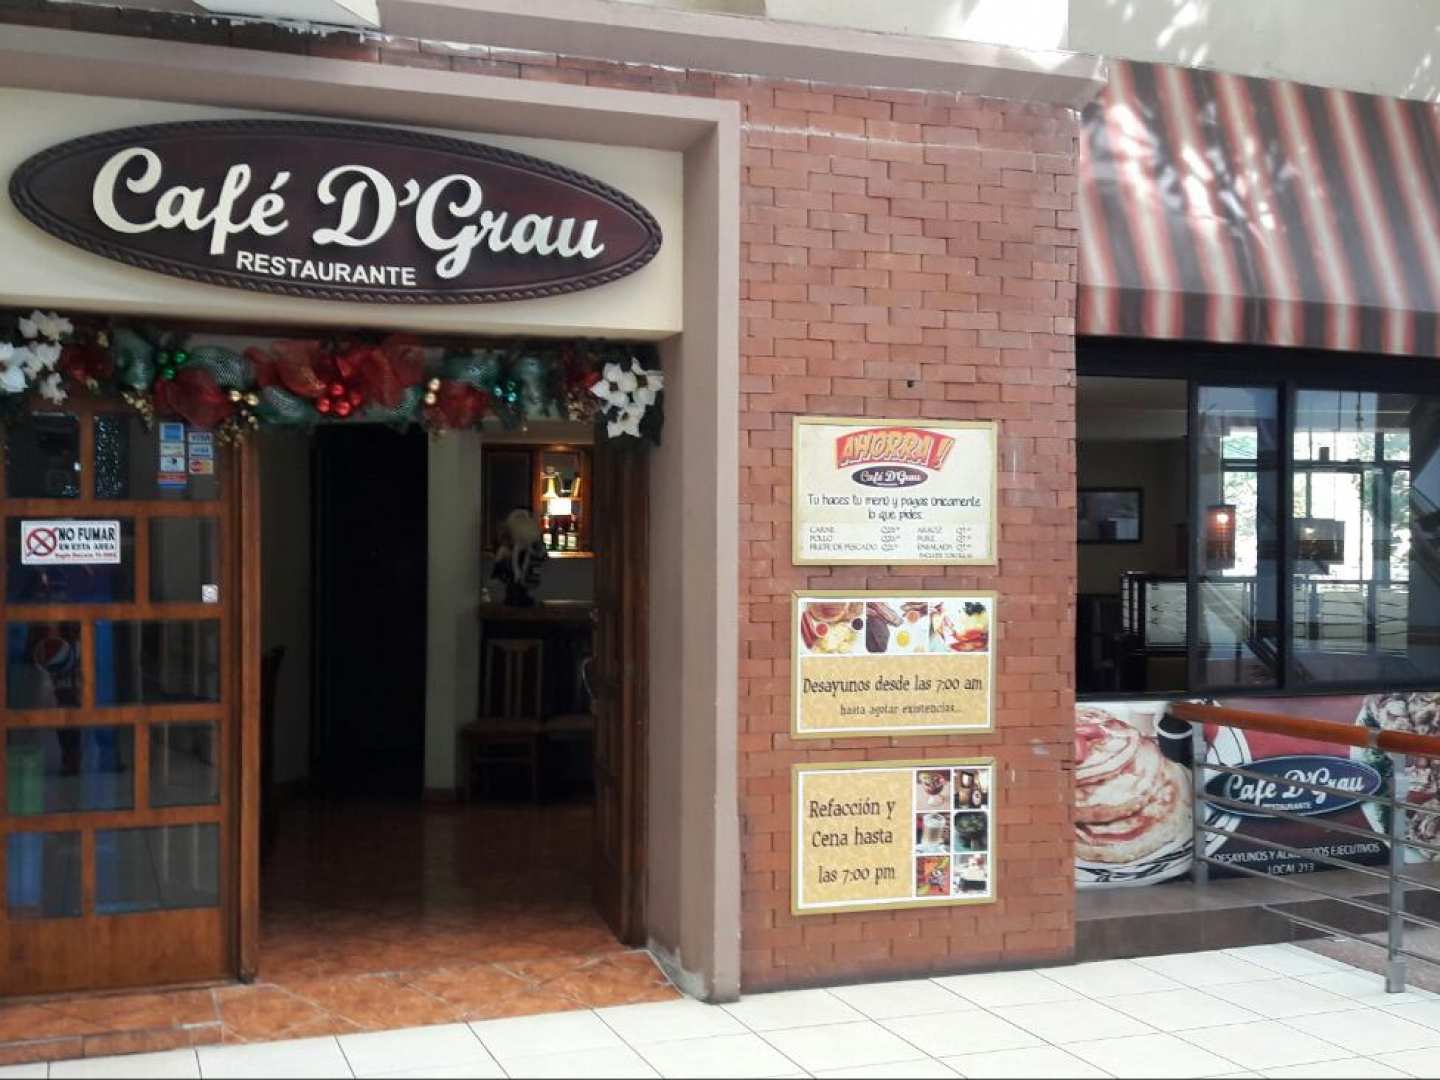 Cafe D'Grau